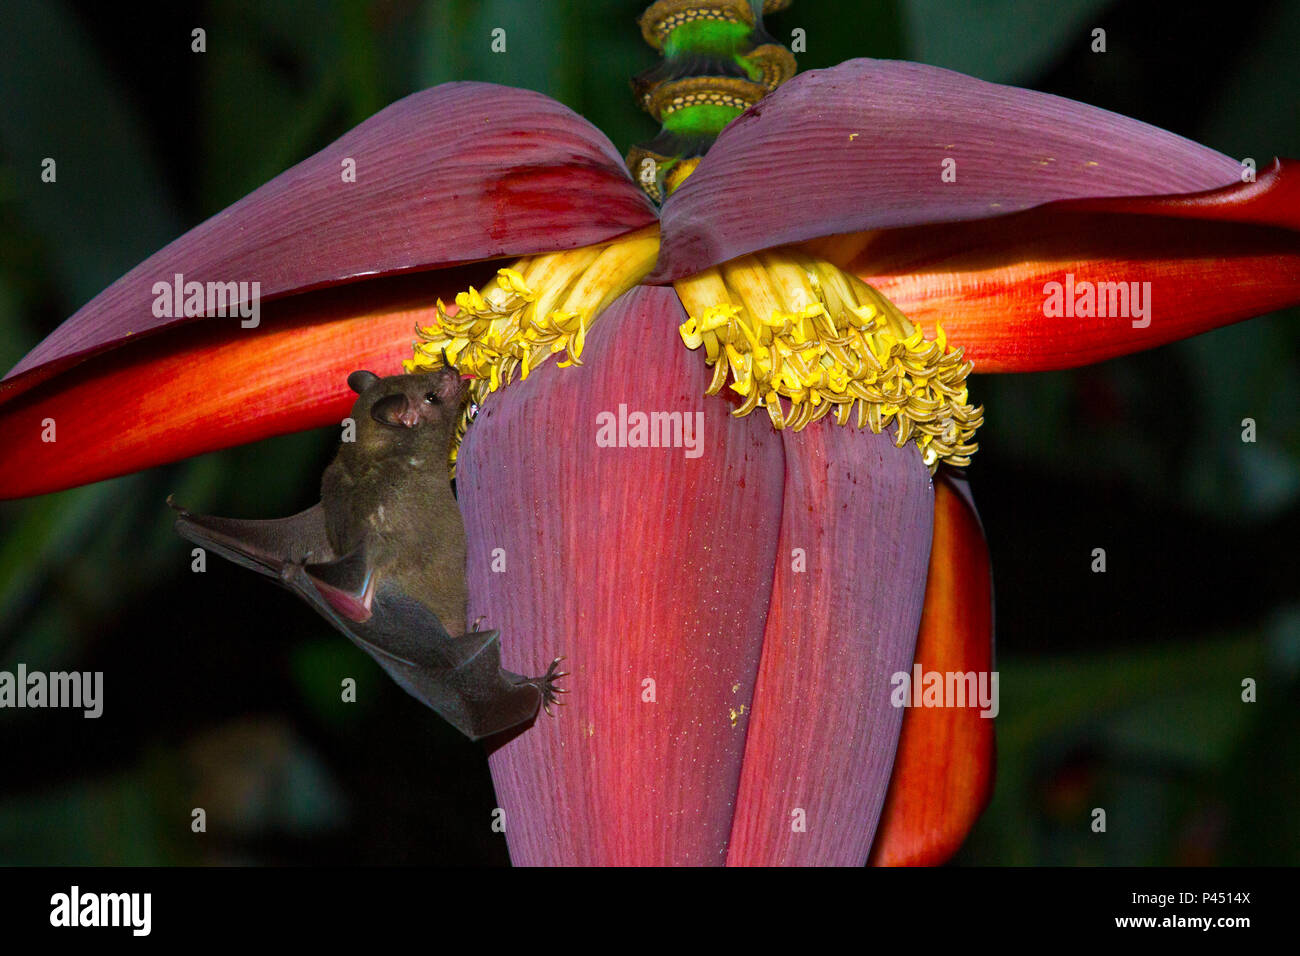 Morcego-beija-flor (Phyllostomidae) alimentando Glossophaginae --se na do©ctar  de flores de bananeira. RibeirÃ£o Preto / SÃ£o Paulo, Brasil - 19/Mar/2013.  Hoja con lengüeta larga nariz - Glossophaginae Bat (Phyllostomidae)  alimentación en el néctar